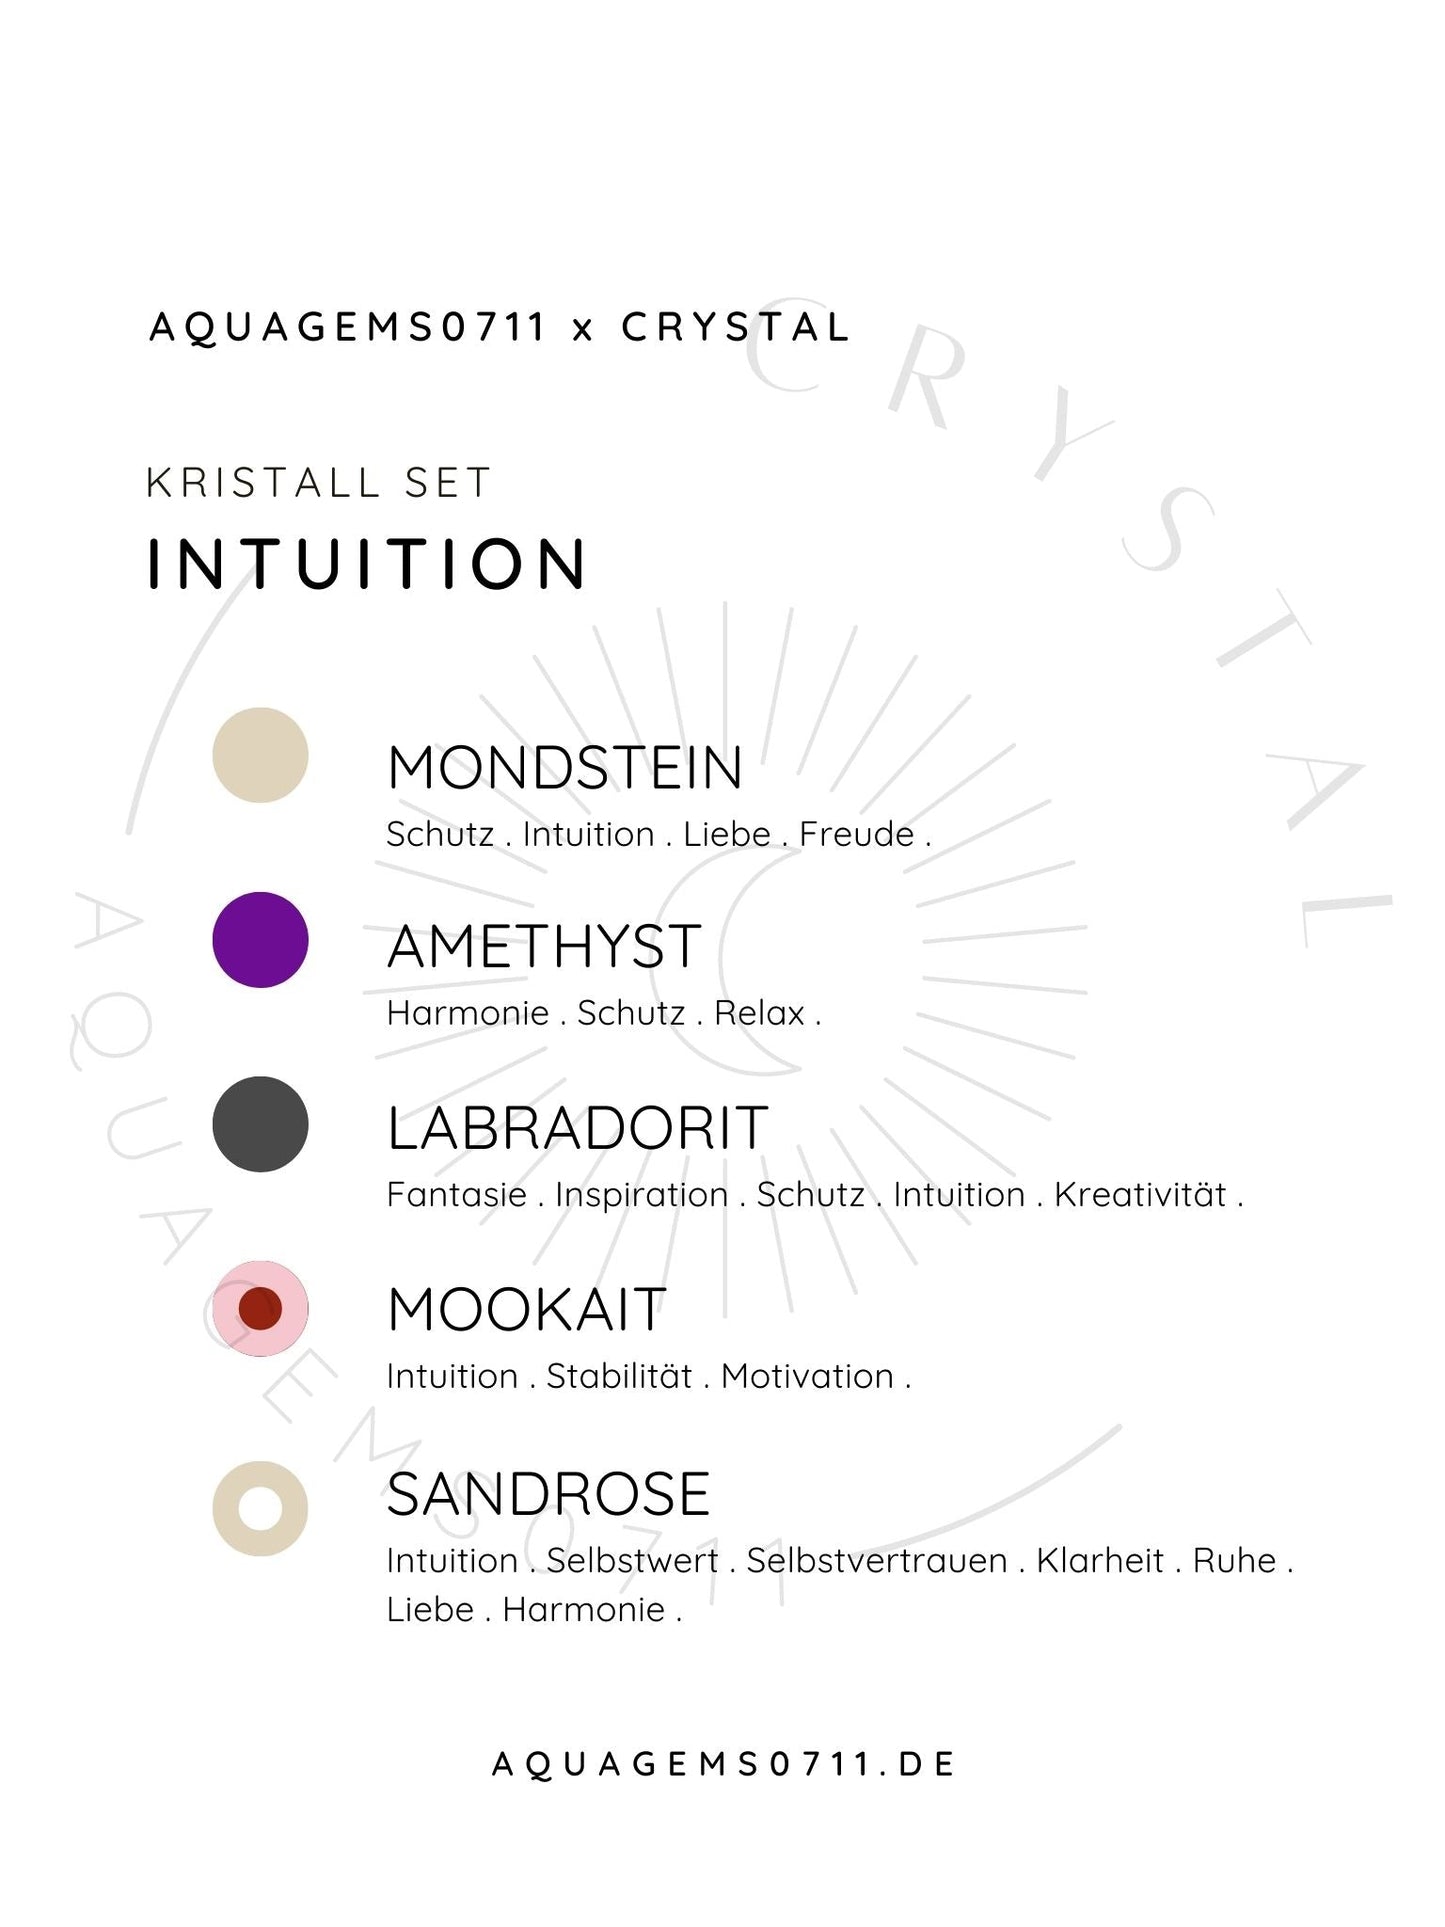 Kristall Set Intuition . CRYSTAL KIT INTUITION . Mondstein . Amethyst . Labradorit . Mookait . Sandrose